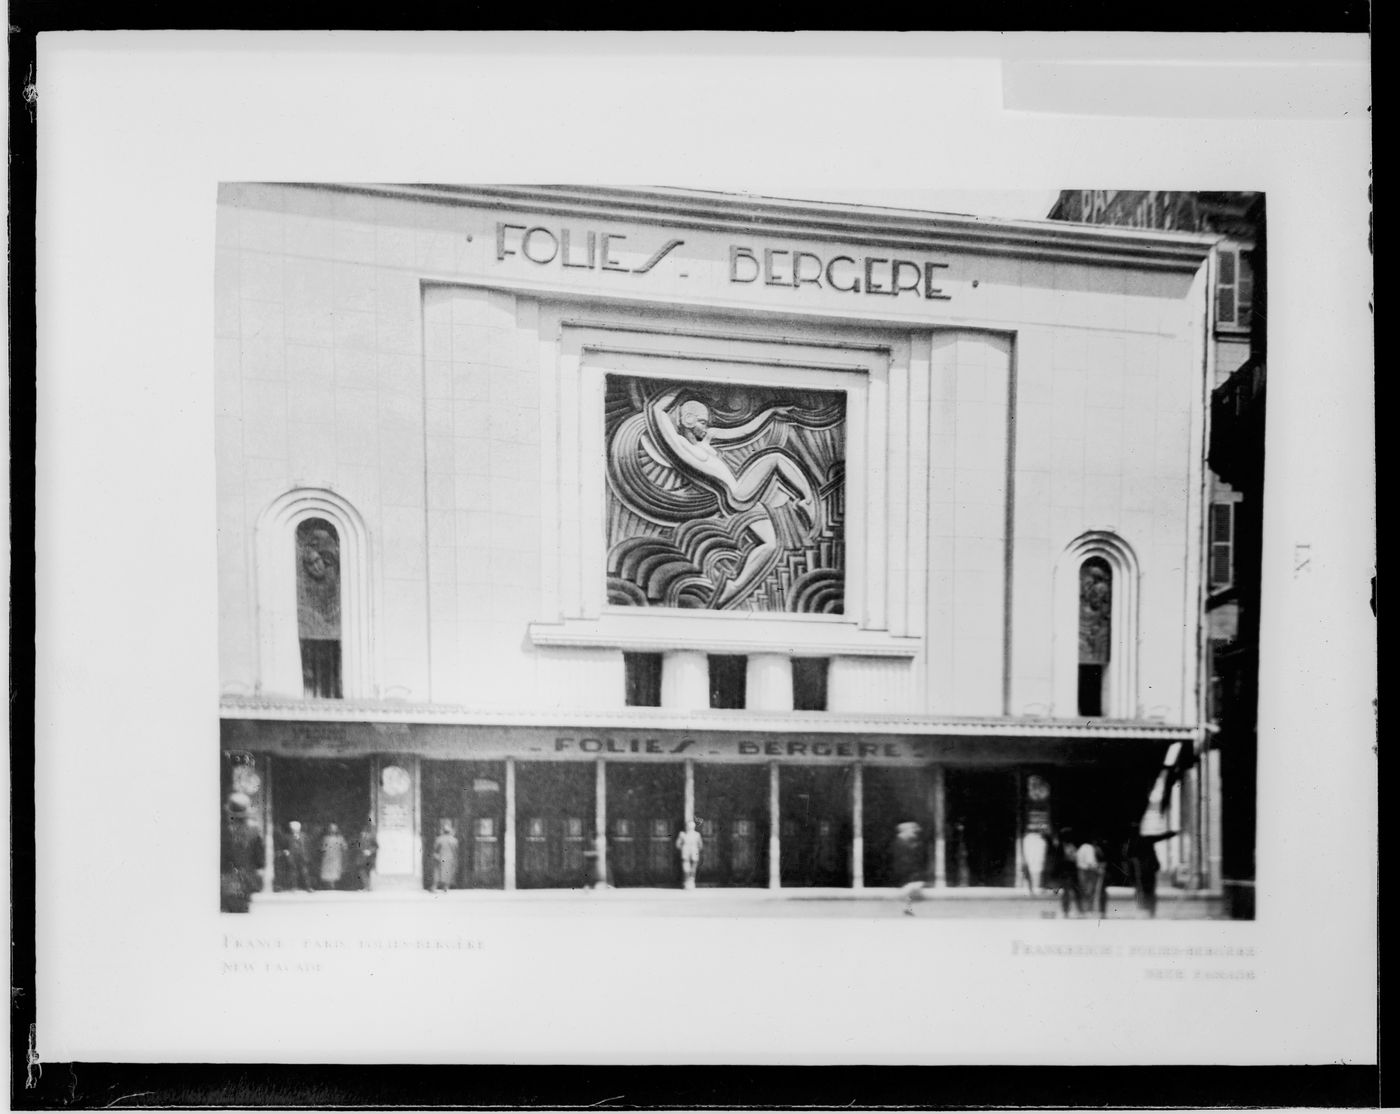 Vue de la façade principale des Folies Bergère montrant la fresque par Maurice Pico, Paris